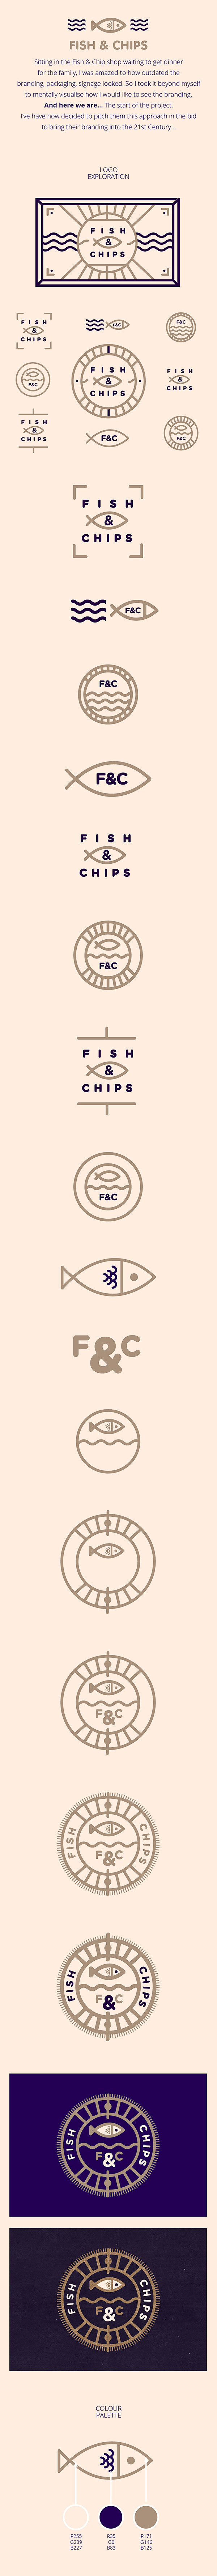 Fish & Chips餐饮品牌形象设计...